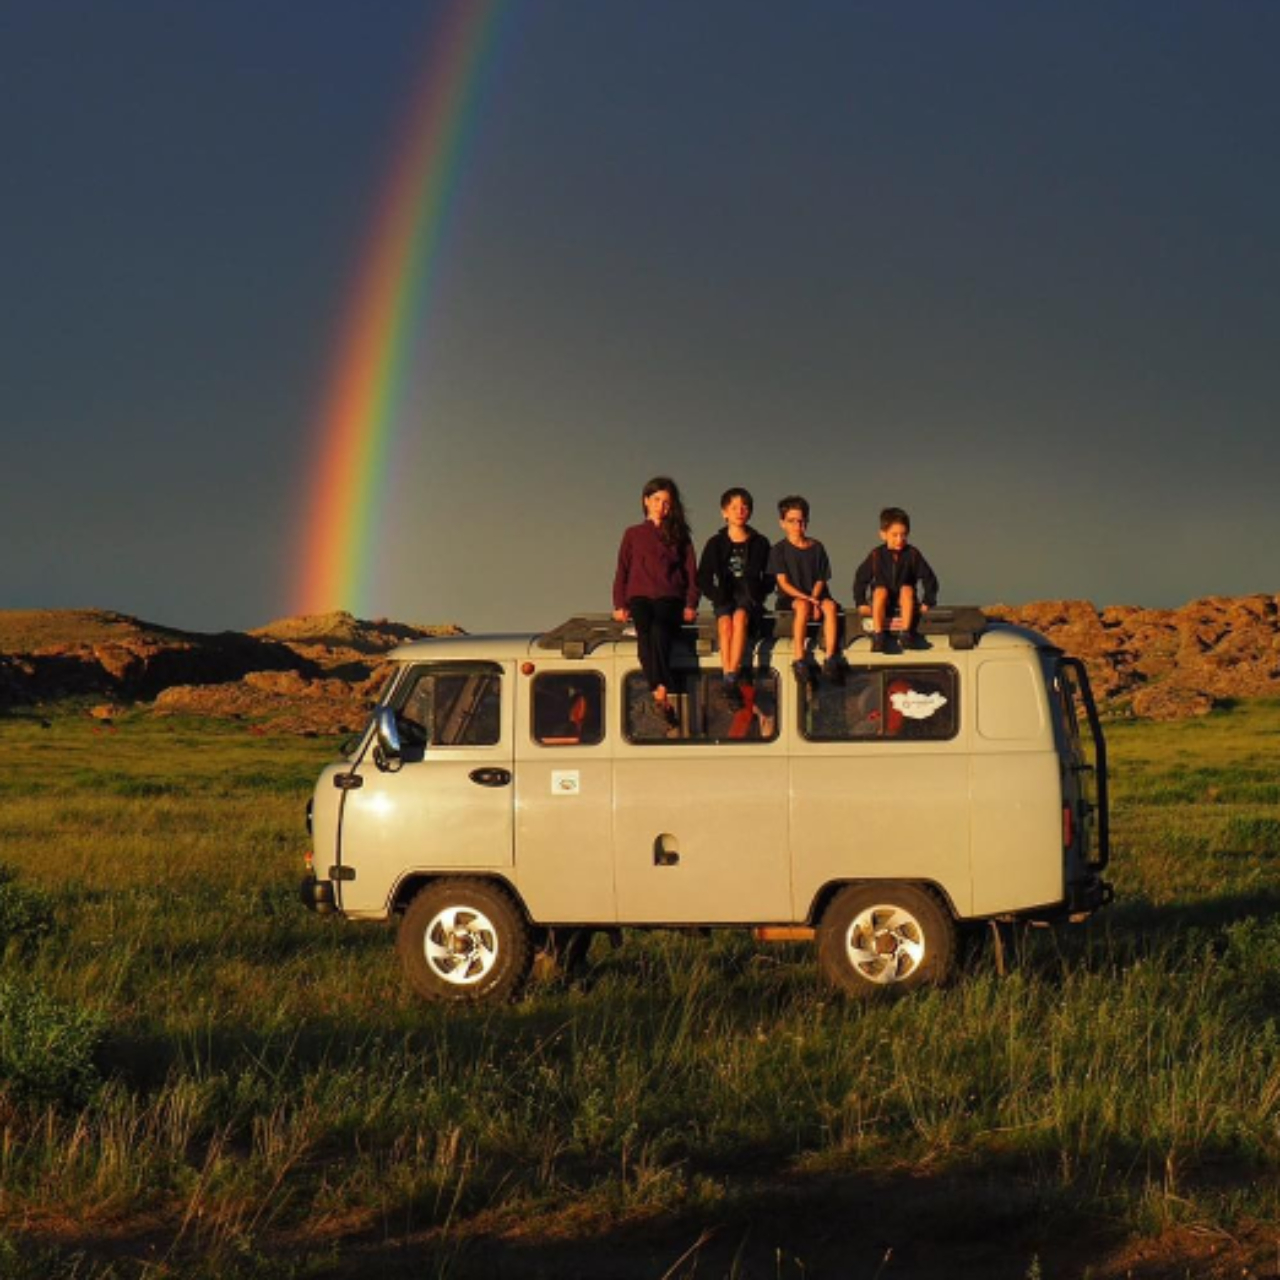 Fotografia da família, com as crianças sentadas em cima de veículo, na Mongolia